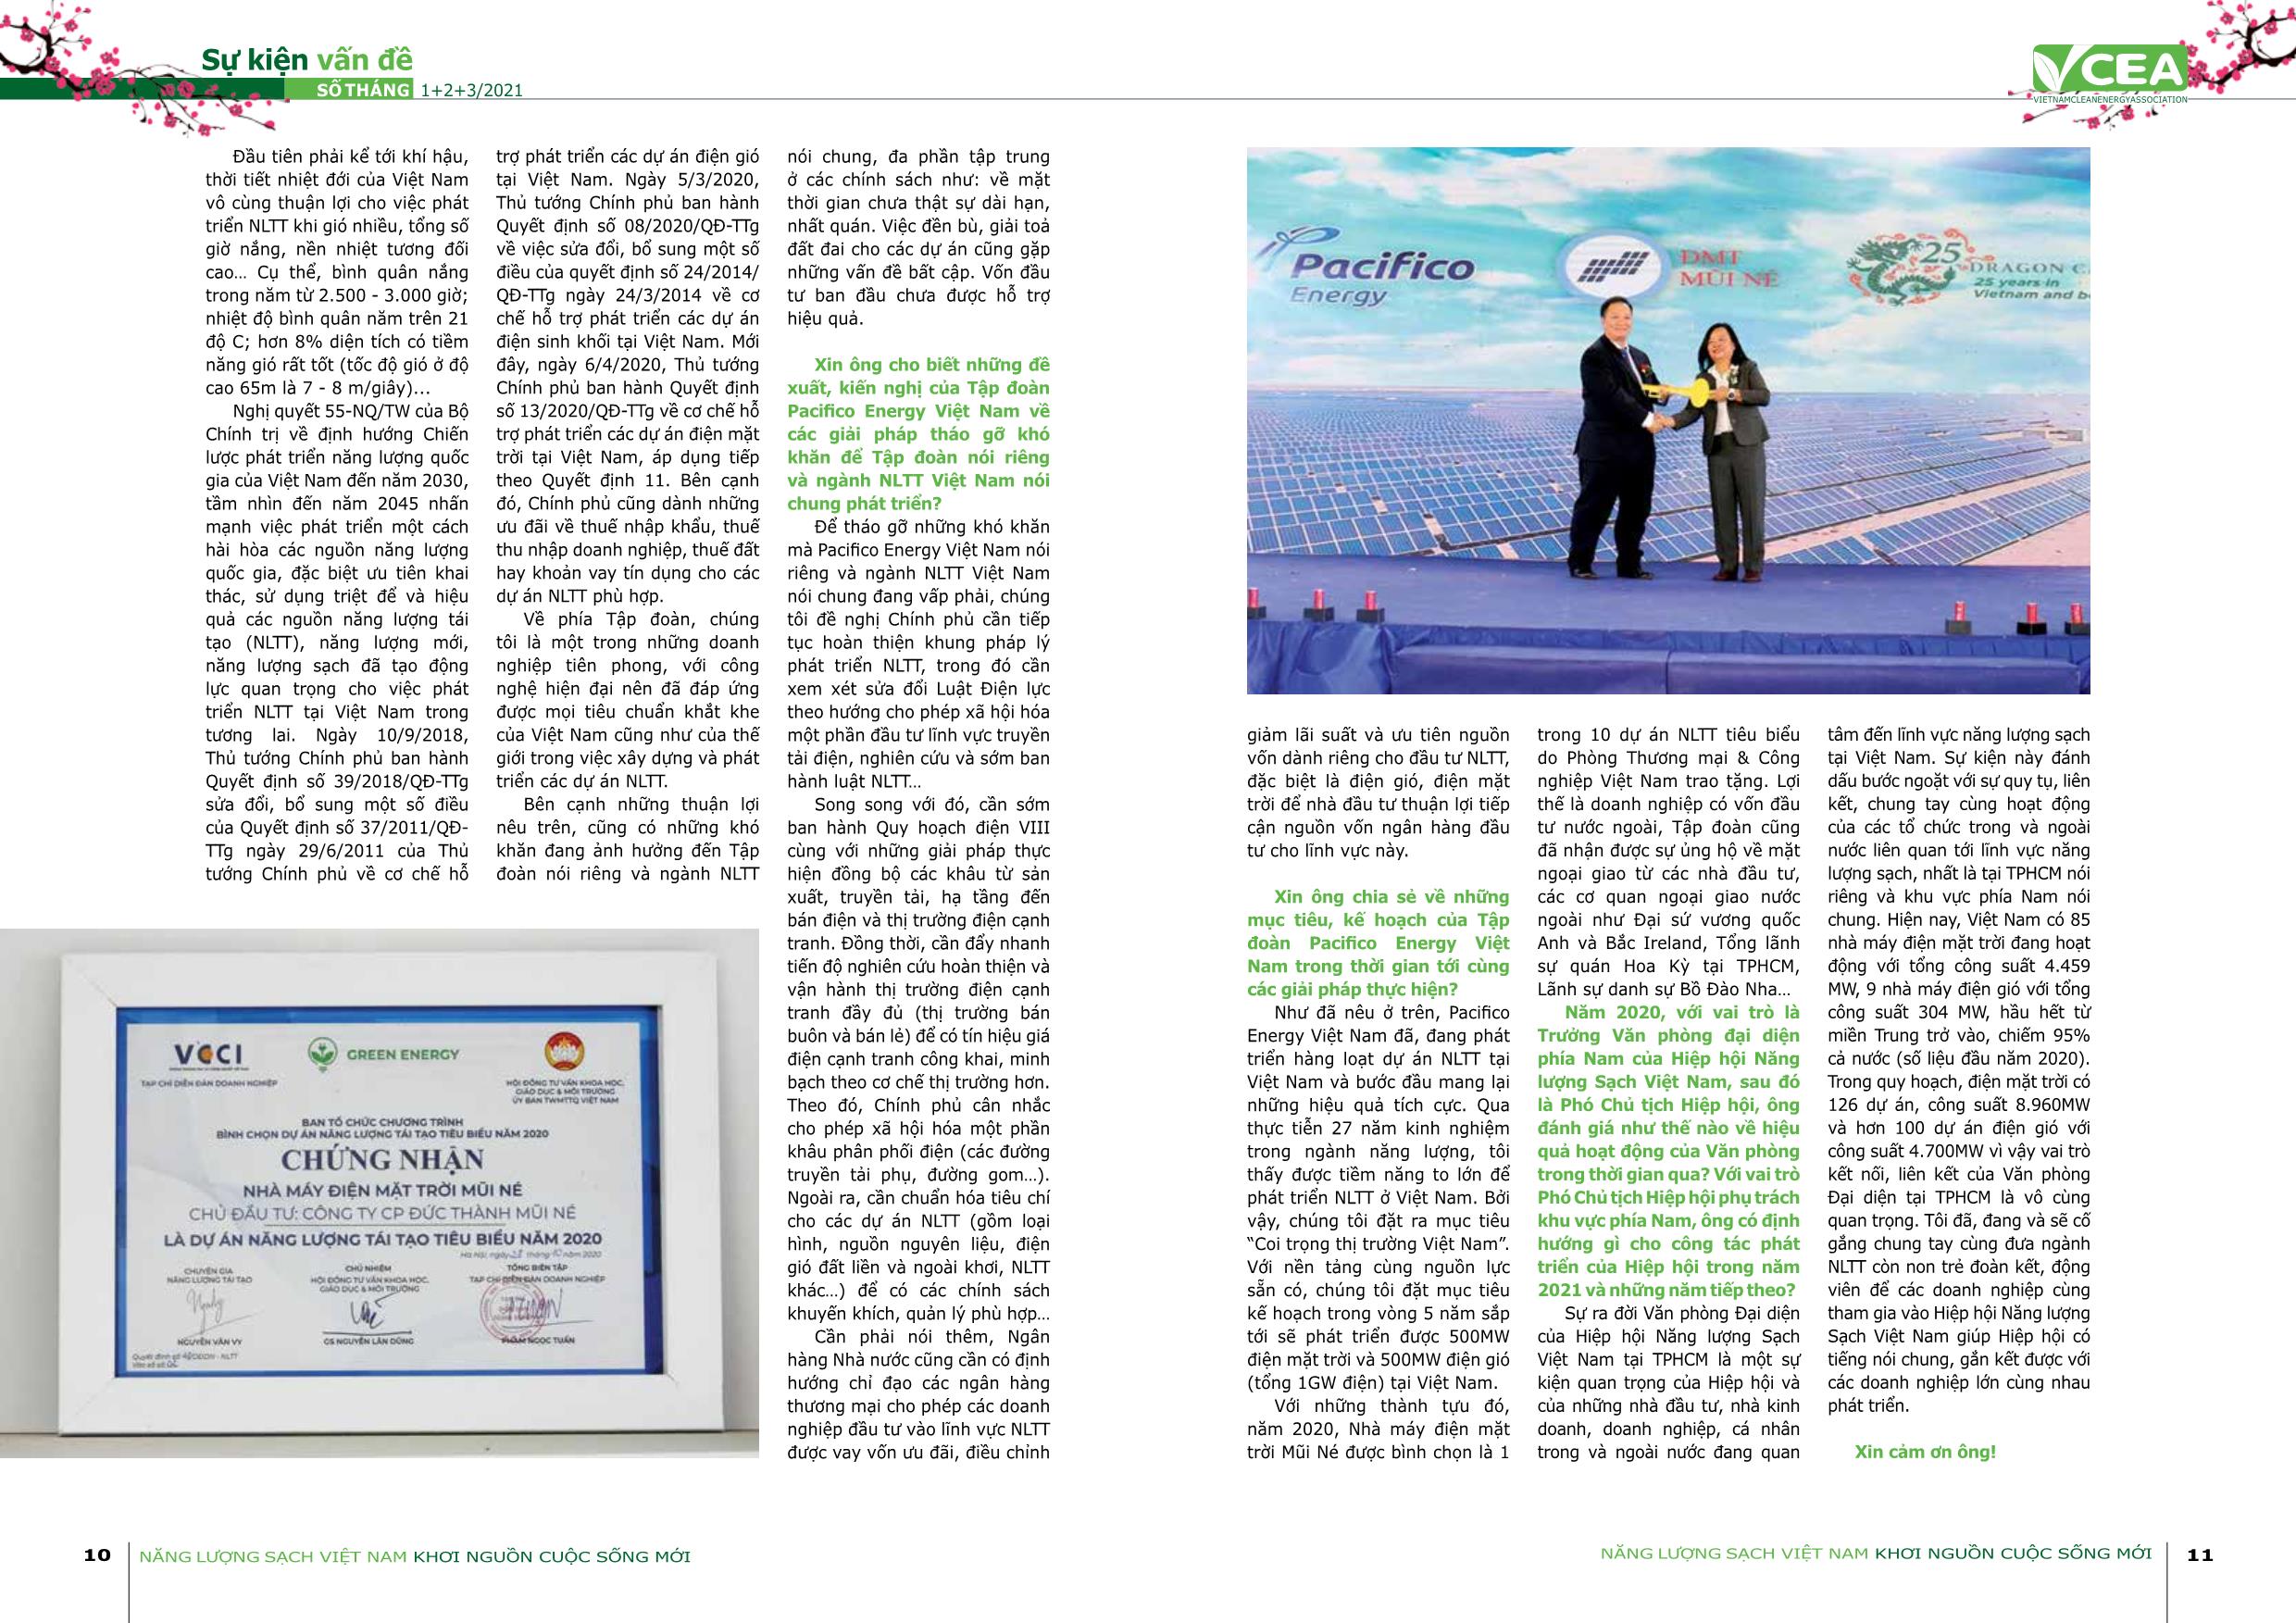 Tạp chí Năng lượng sạch Việt Nam - Số 47 - Tháng 1+2+3/2021 trang 6